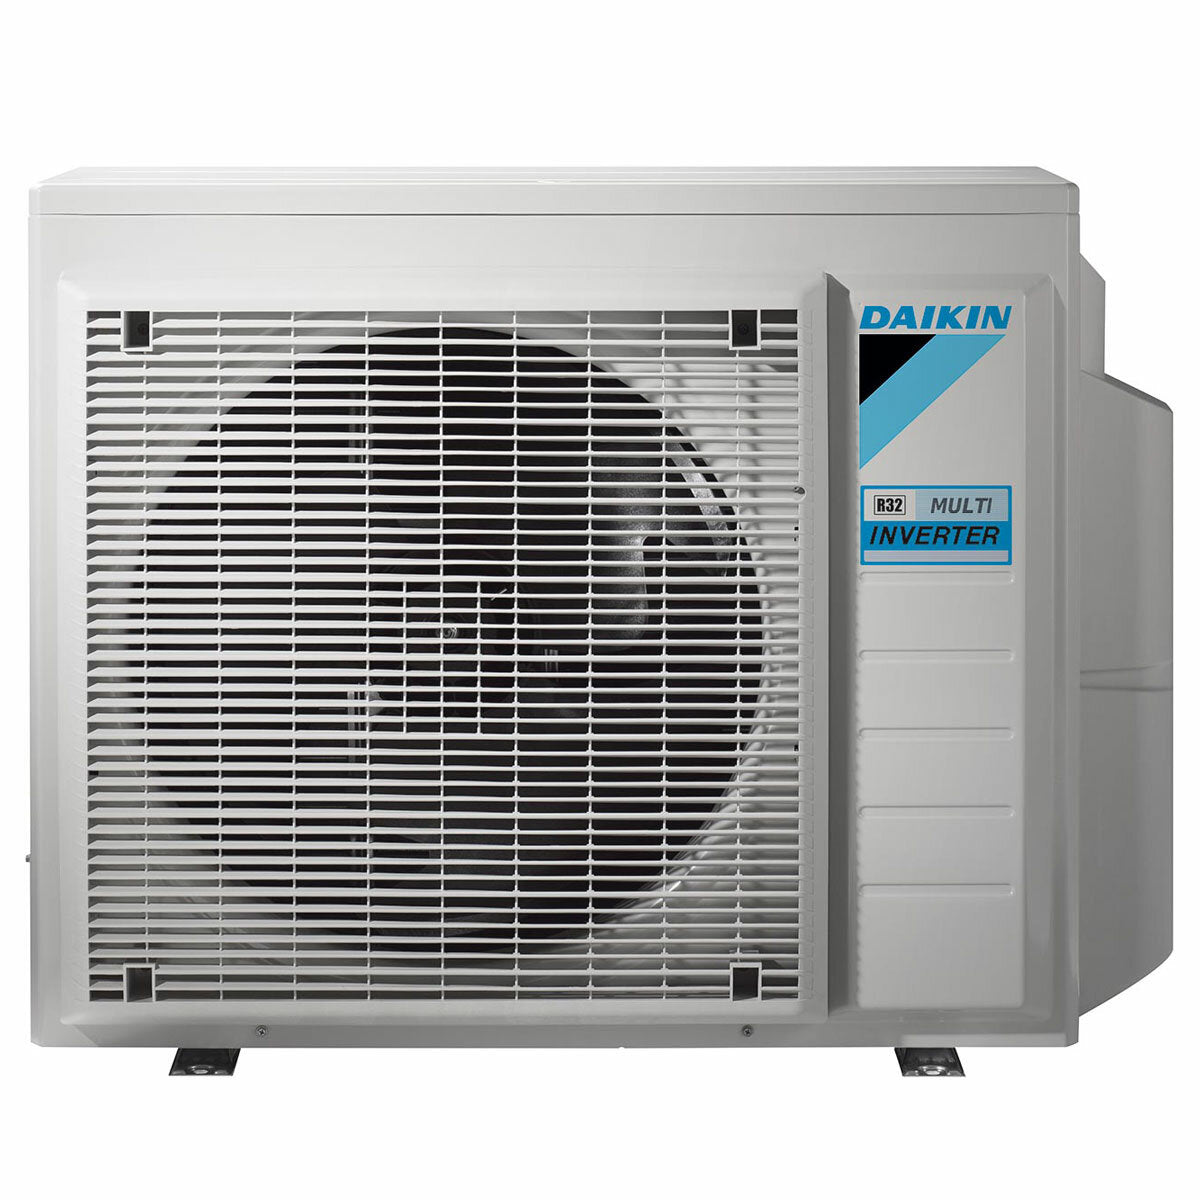 Daikin Emura 3 air conditioner penta split 9000+9000+9000+12000+12000 BTU inverter A++ wifi outdoor unit 7.8 kW Silver